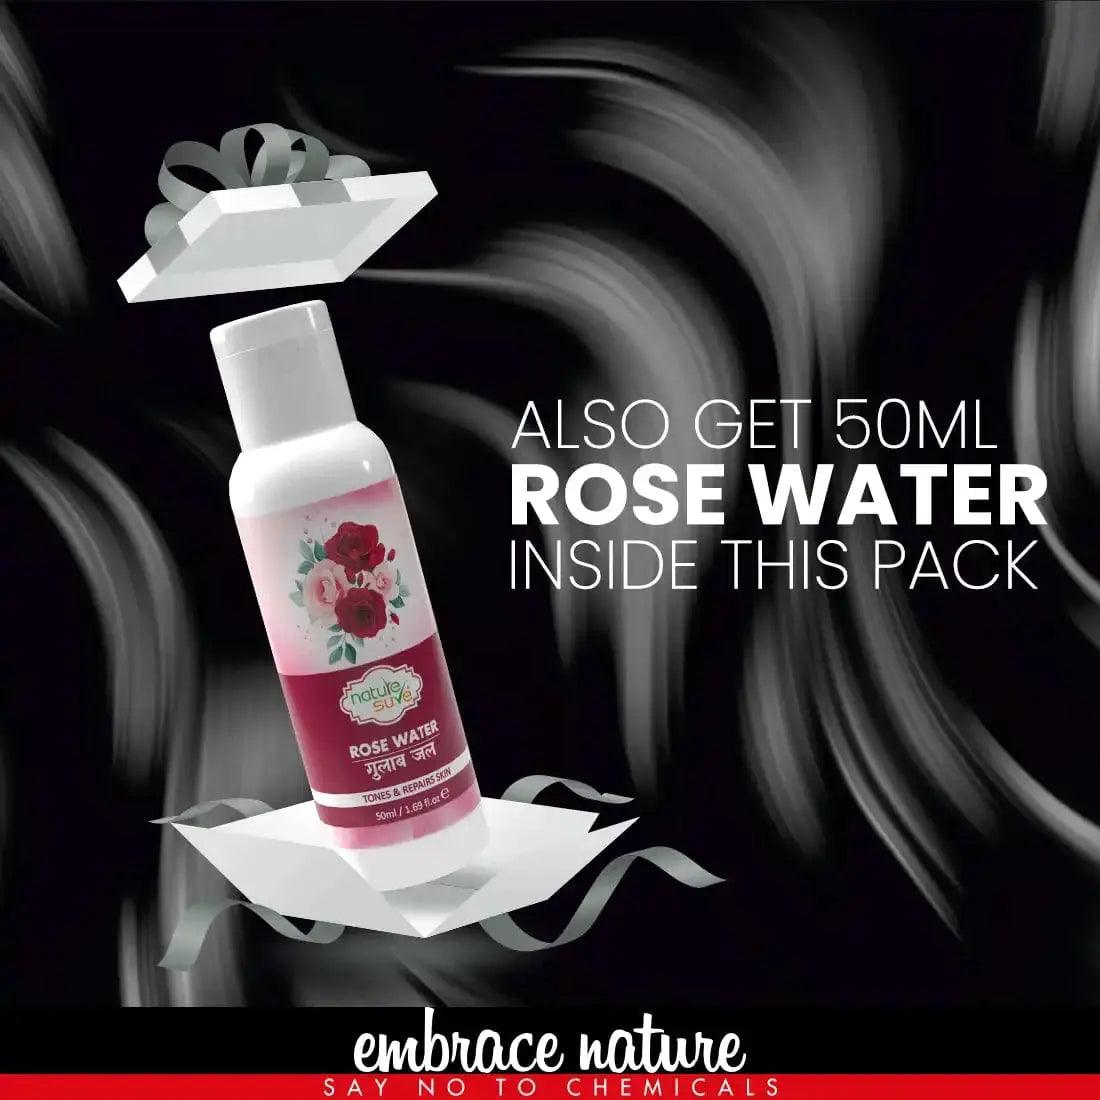 Nature Sure Shikakai Powder 100g with Rose Water 50ml